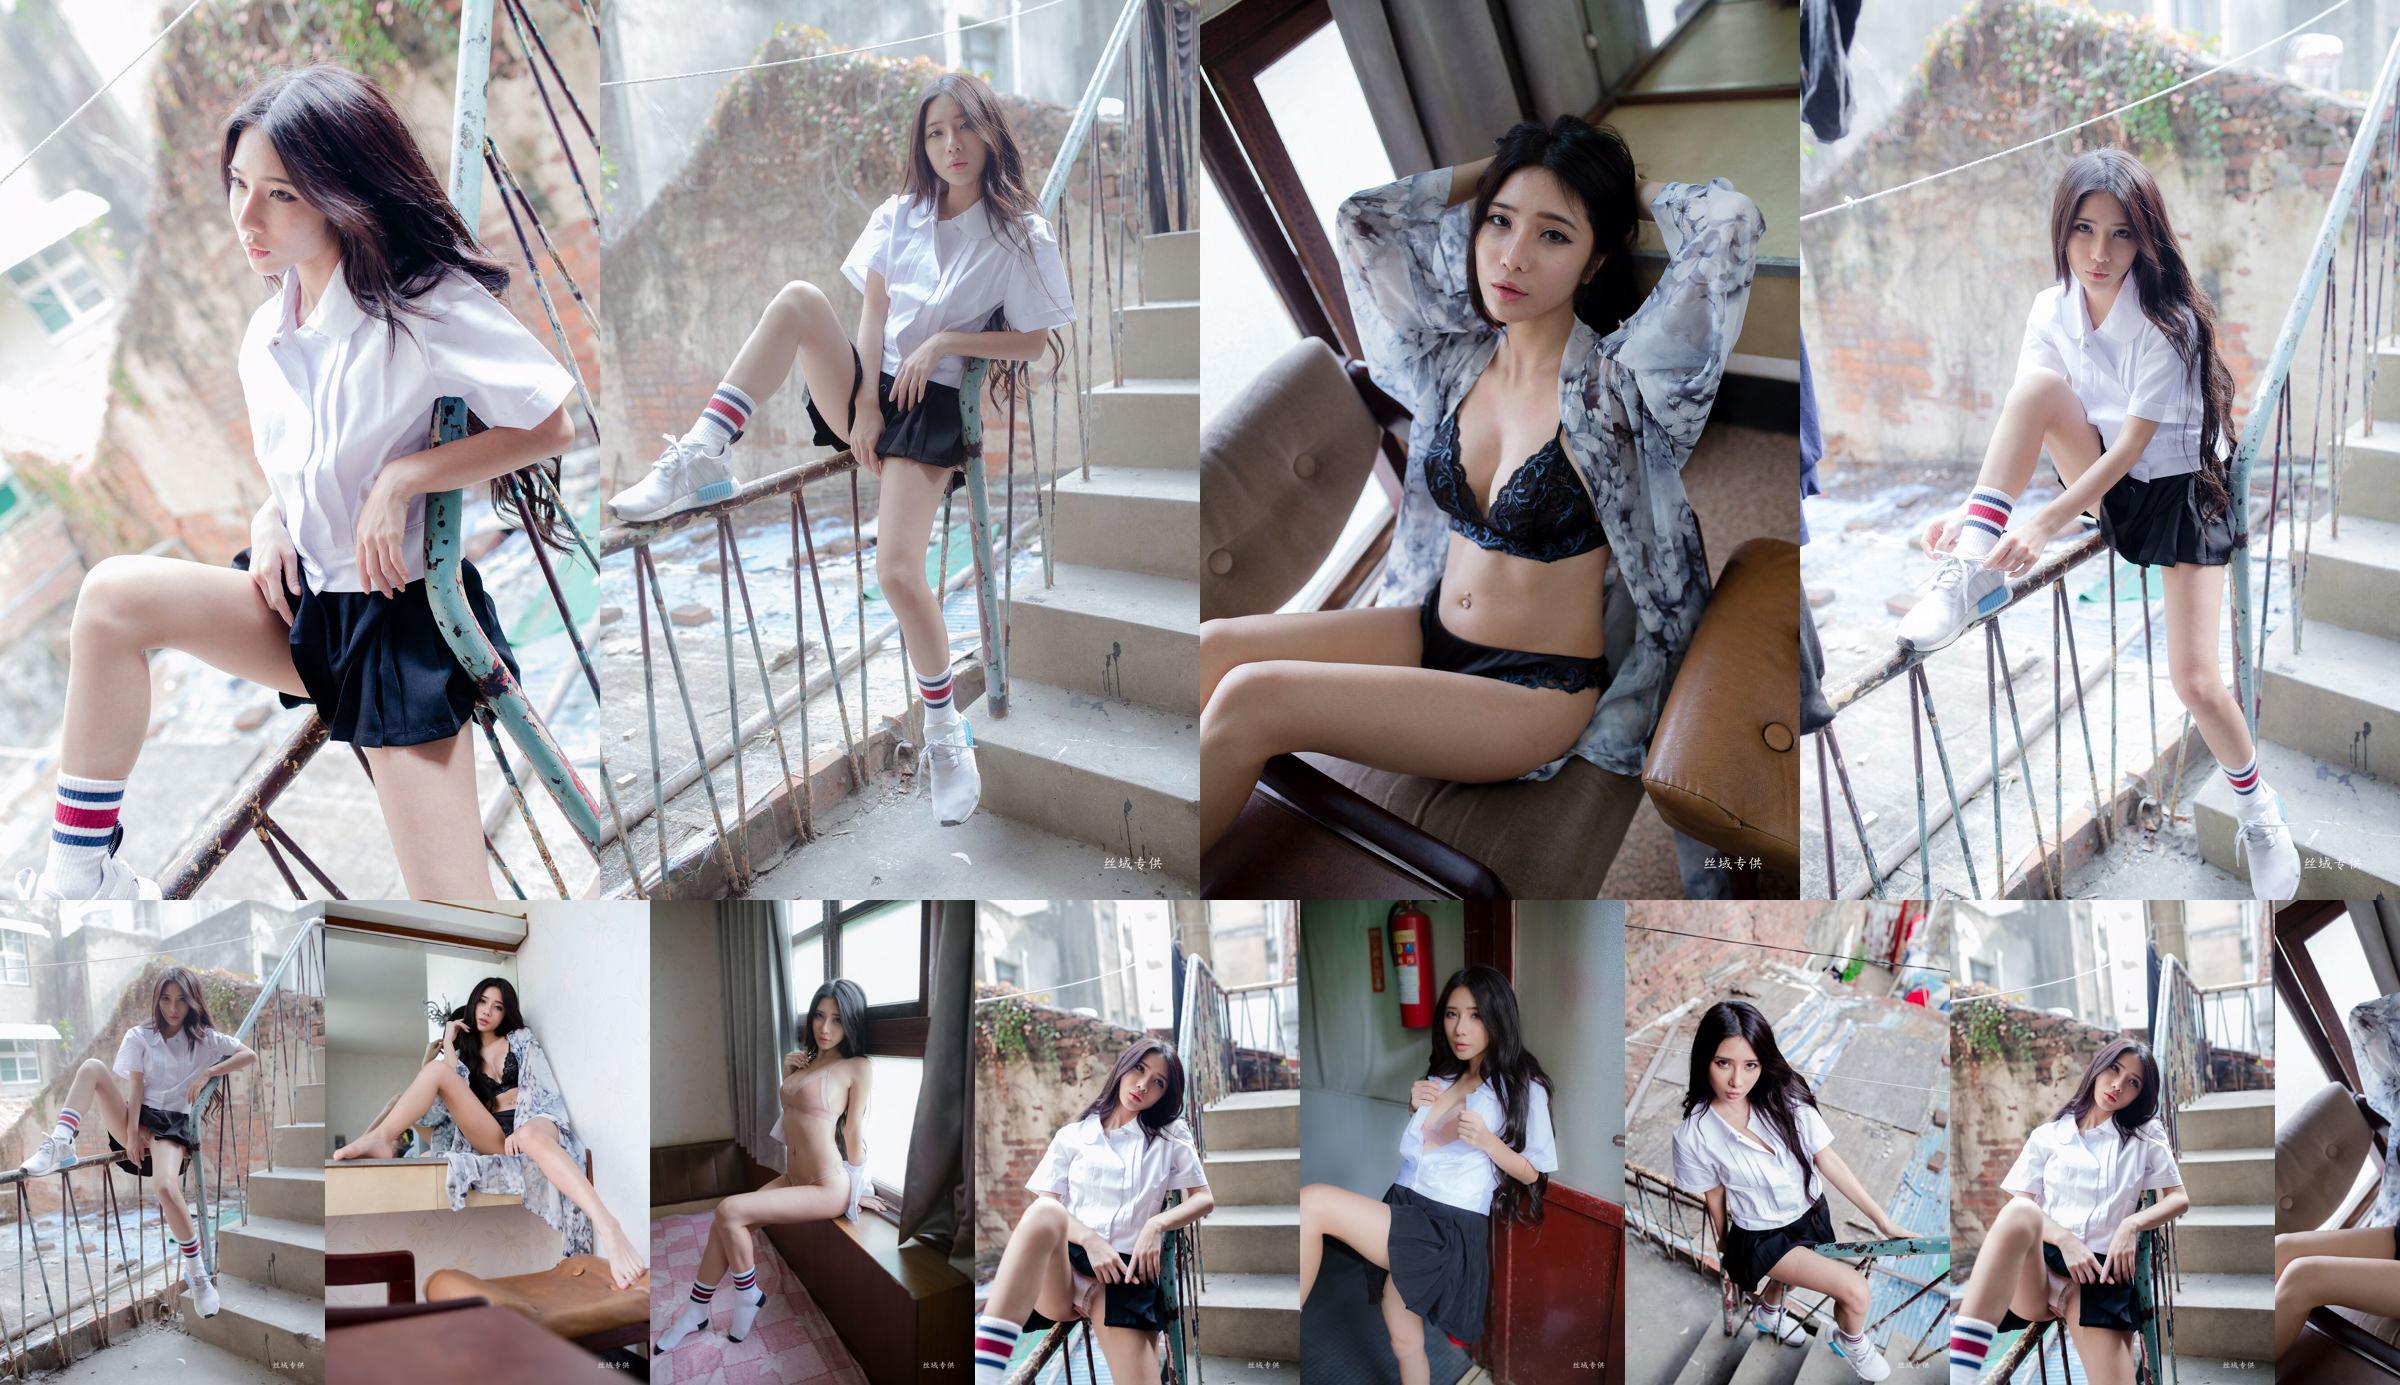 [Taiwan Zhengmei] Shen Qiqi "Outside Shooting of Sailor Suit Underwear" No.0ece92 Page 2